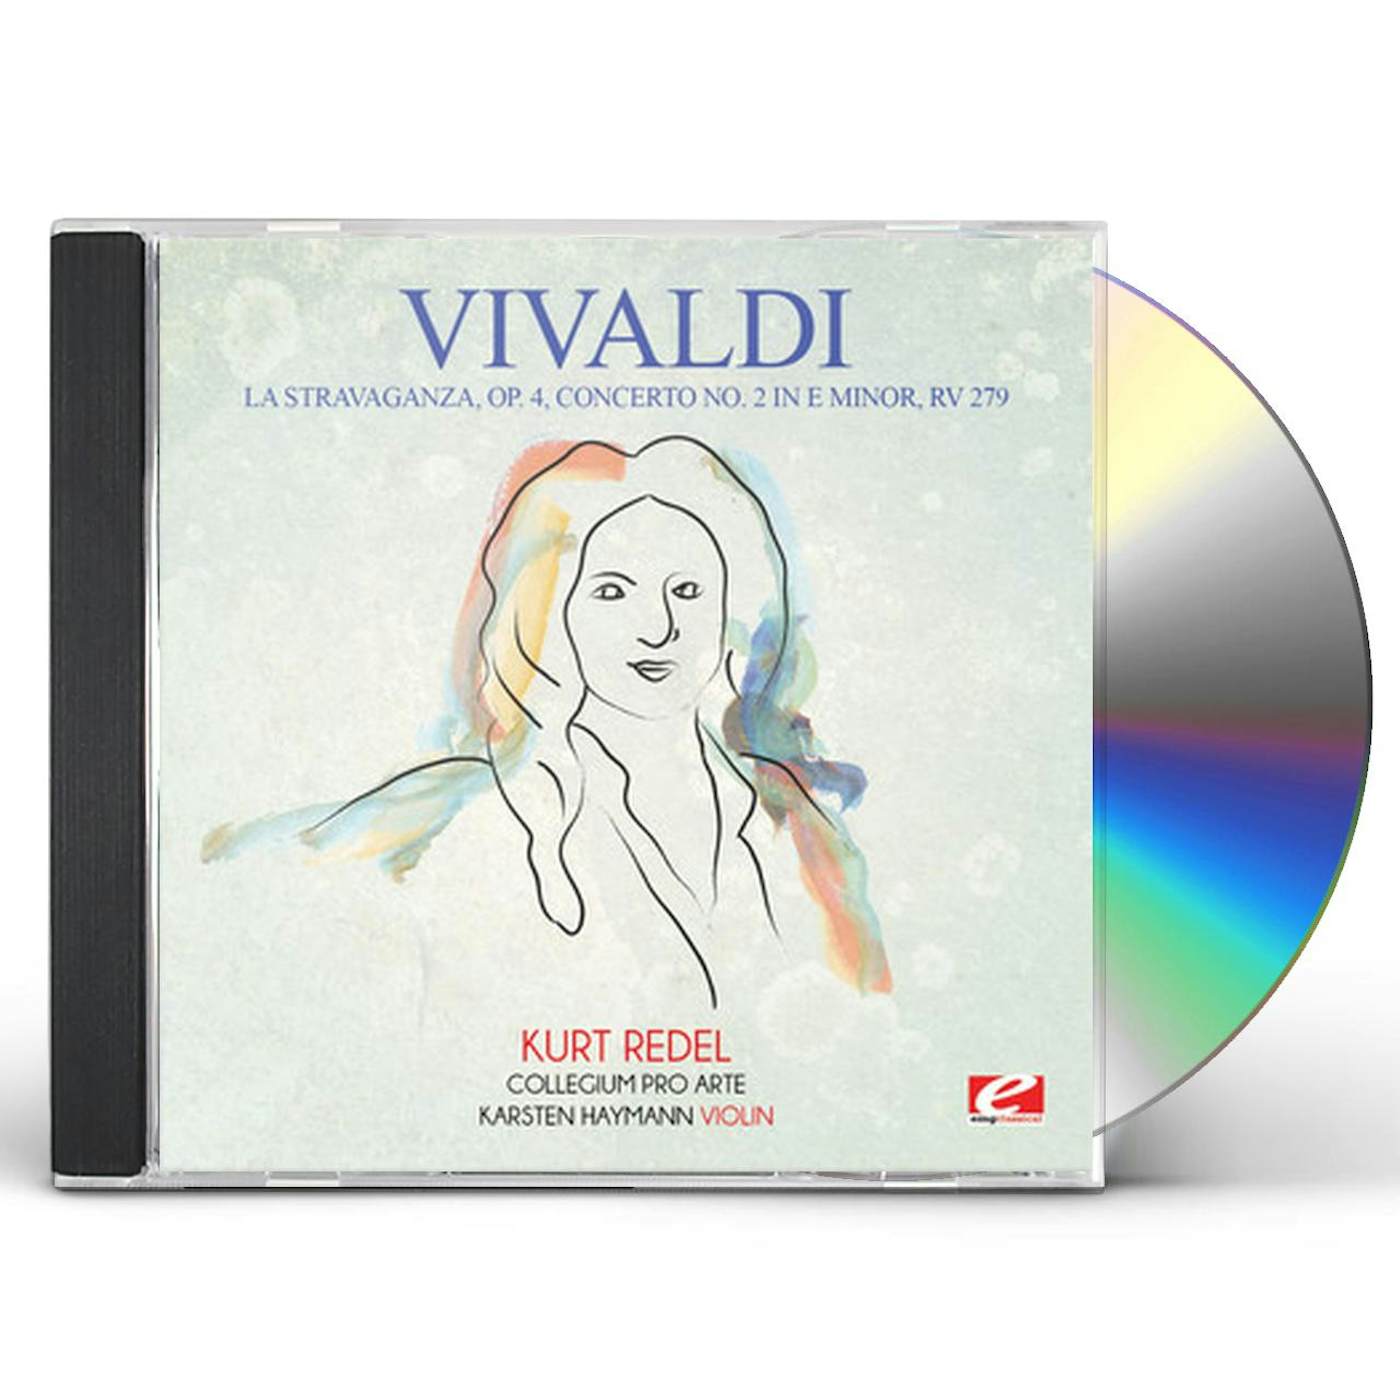 Antonio Vivaldi LA STRAVAGANZA OP. 4 CONCERTO NO. 2 IN E MINOR RV CD